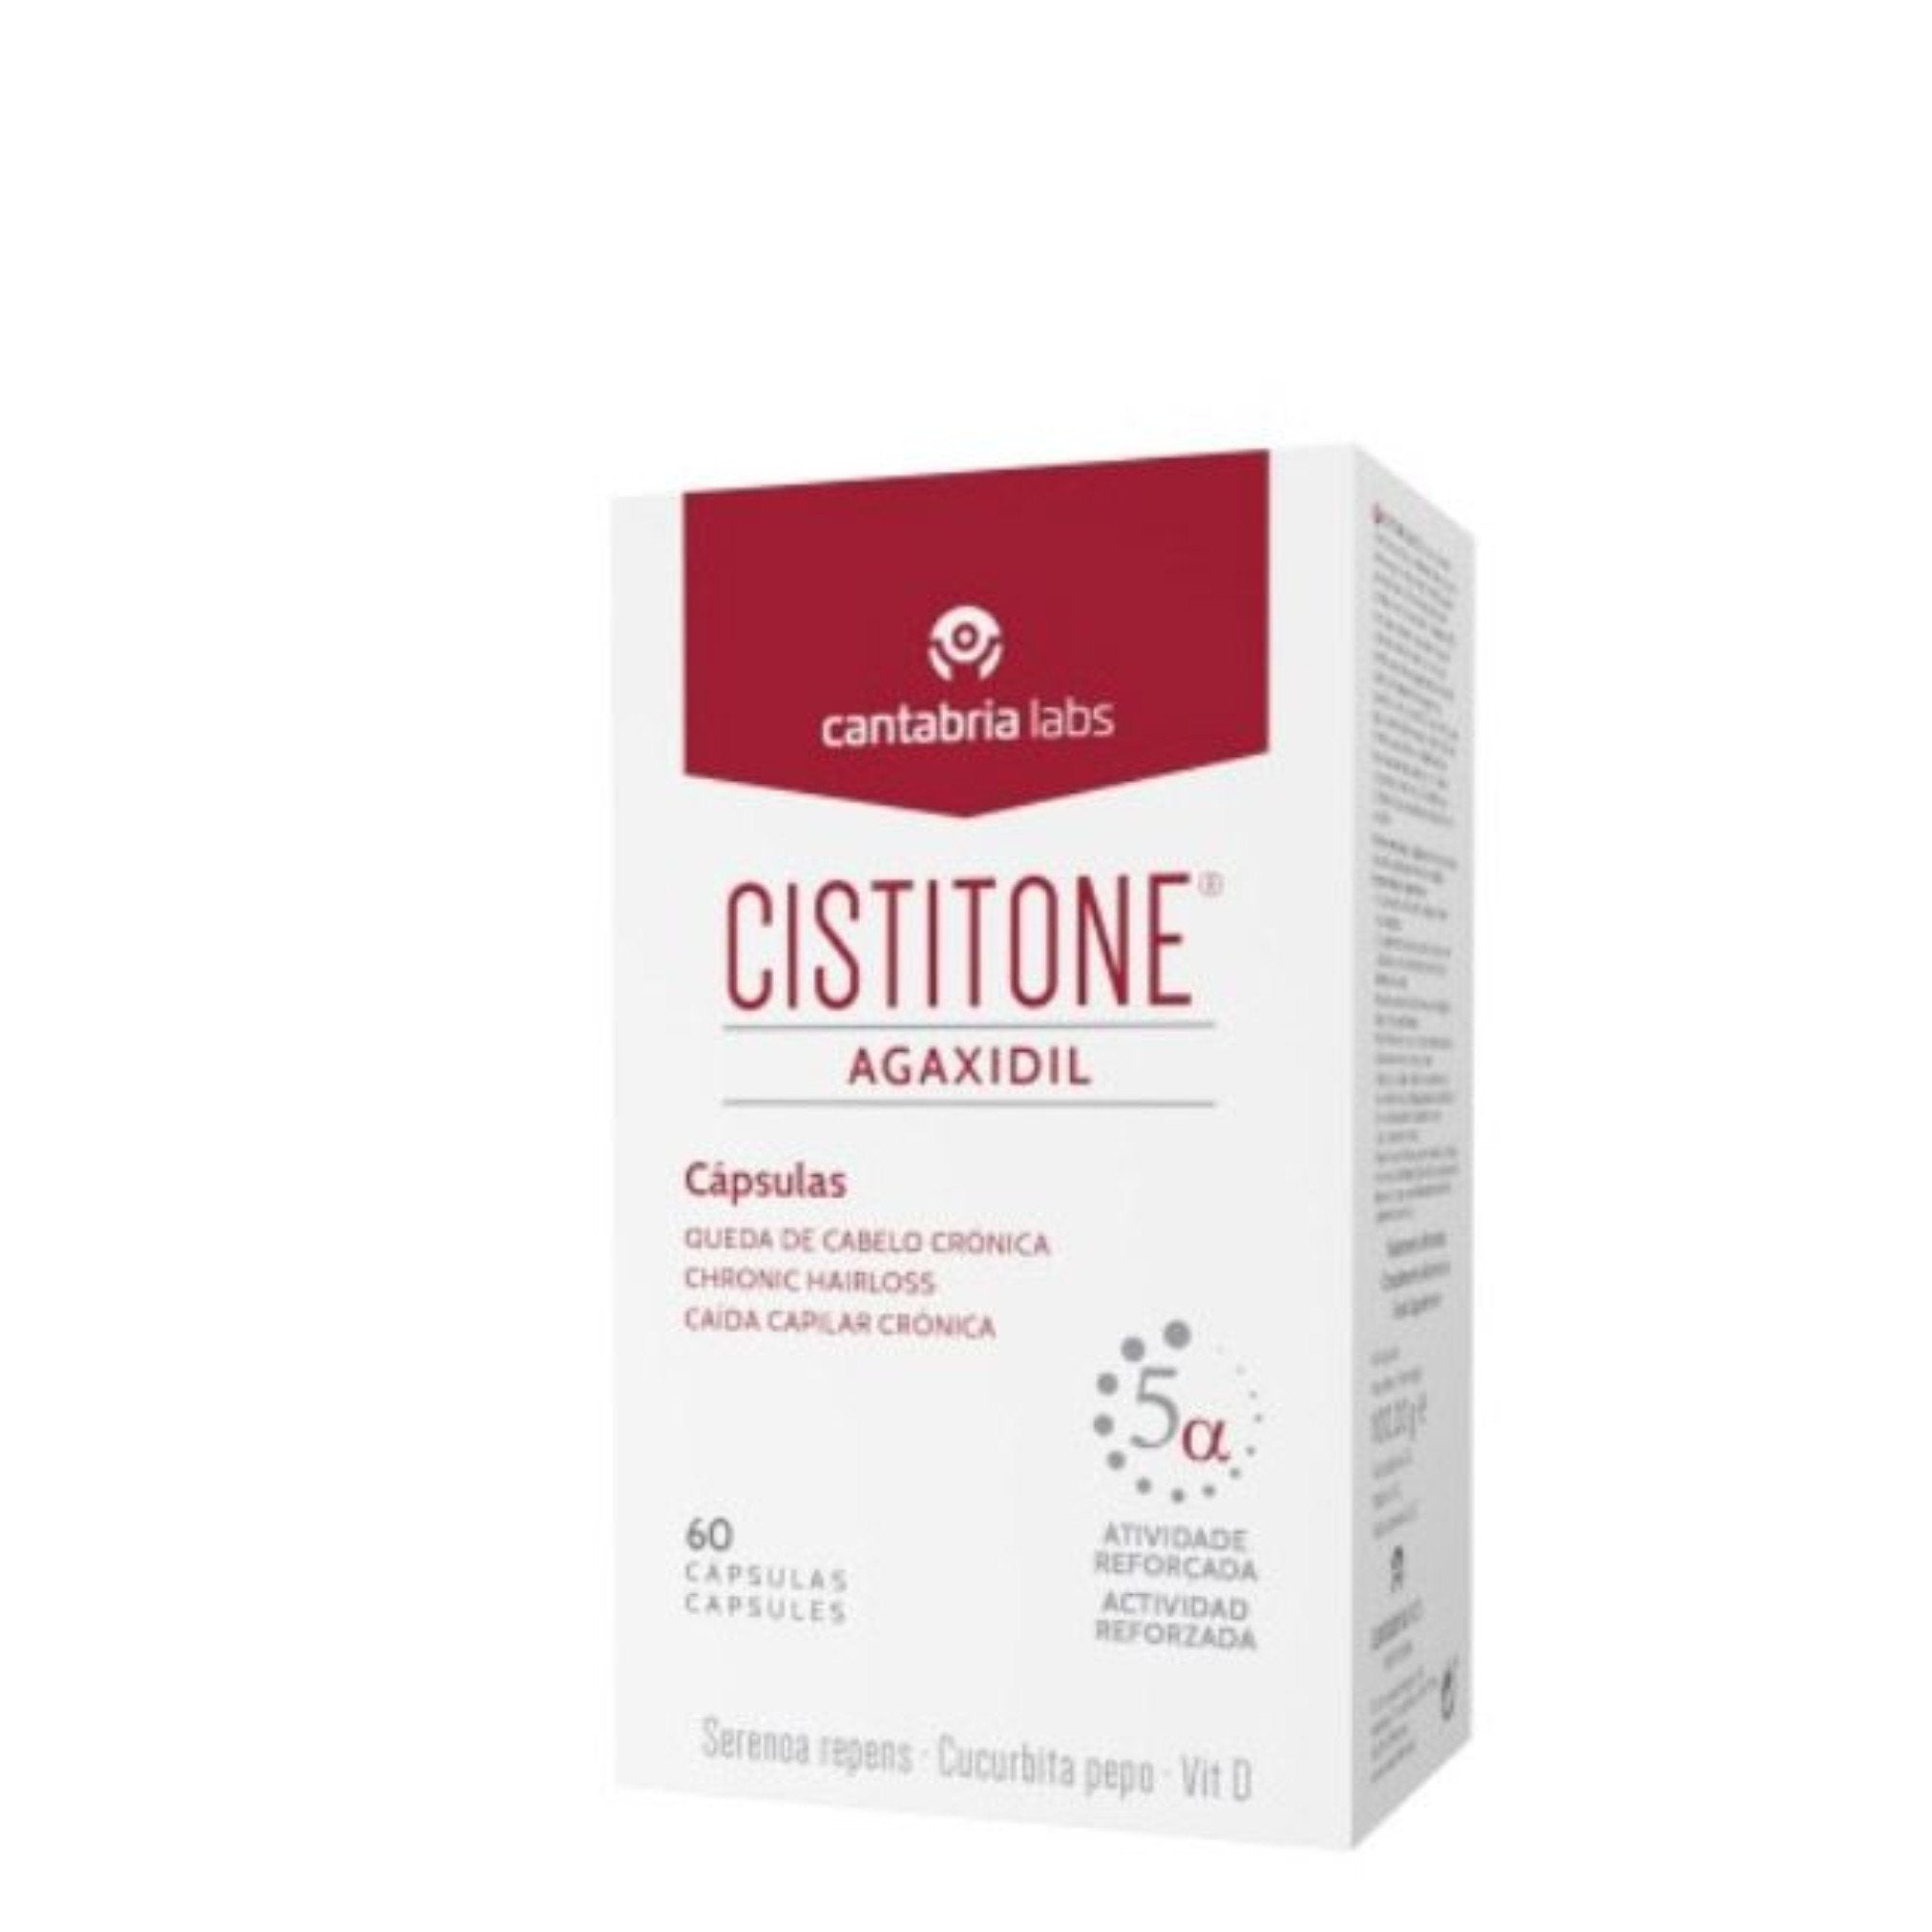 Cistitone Agaxidil Chronic Hair Loss Capsules X60